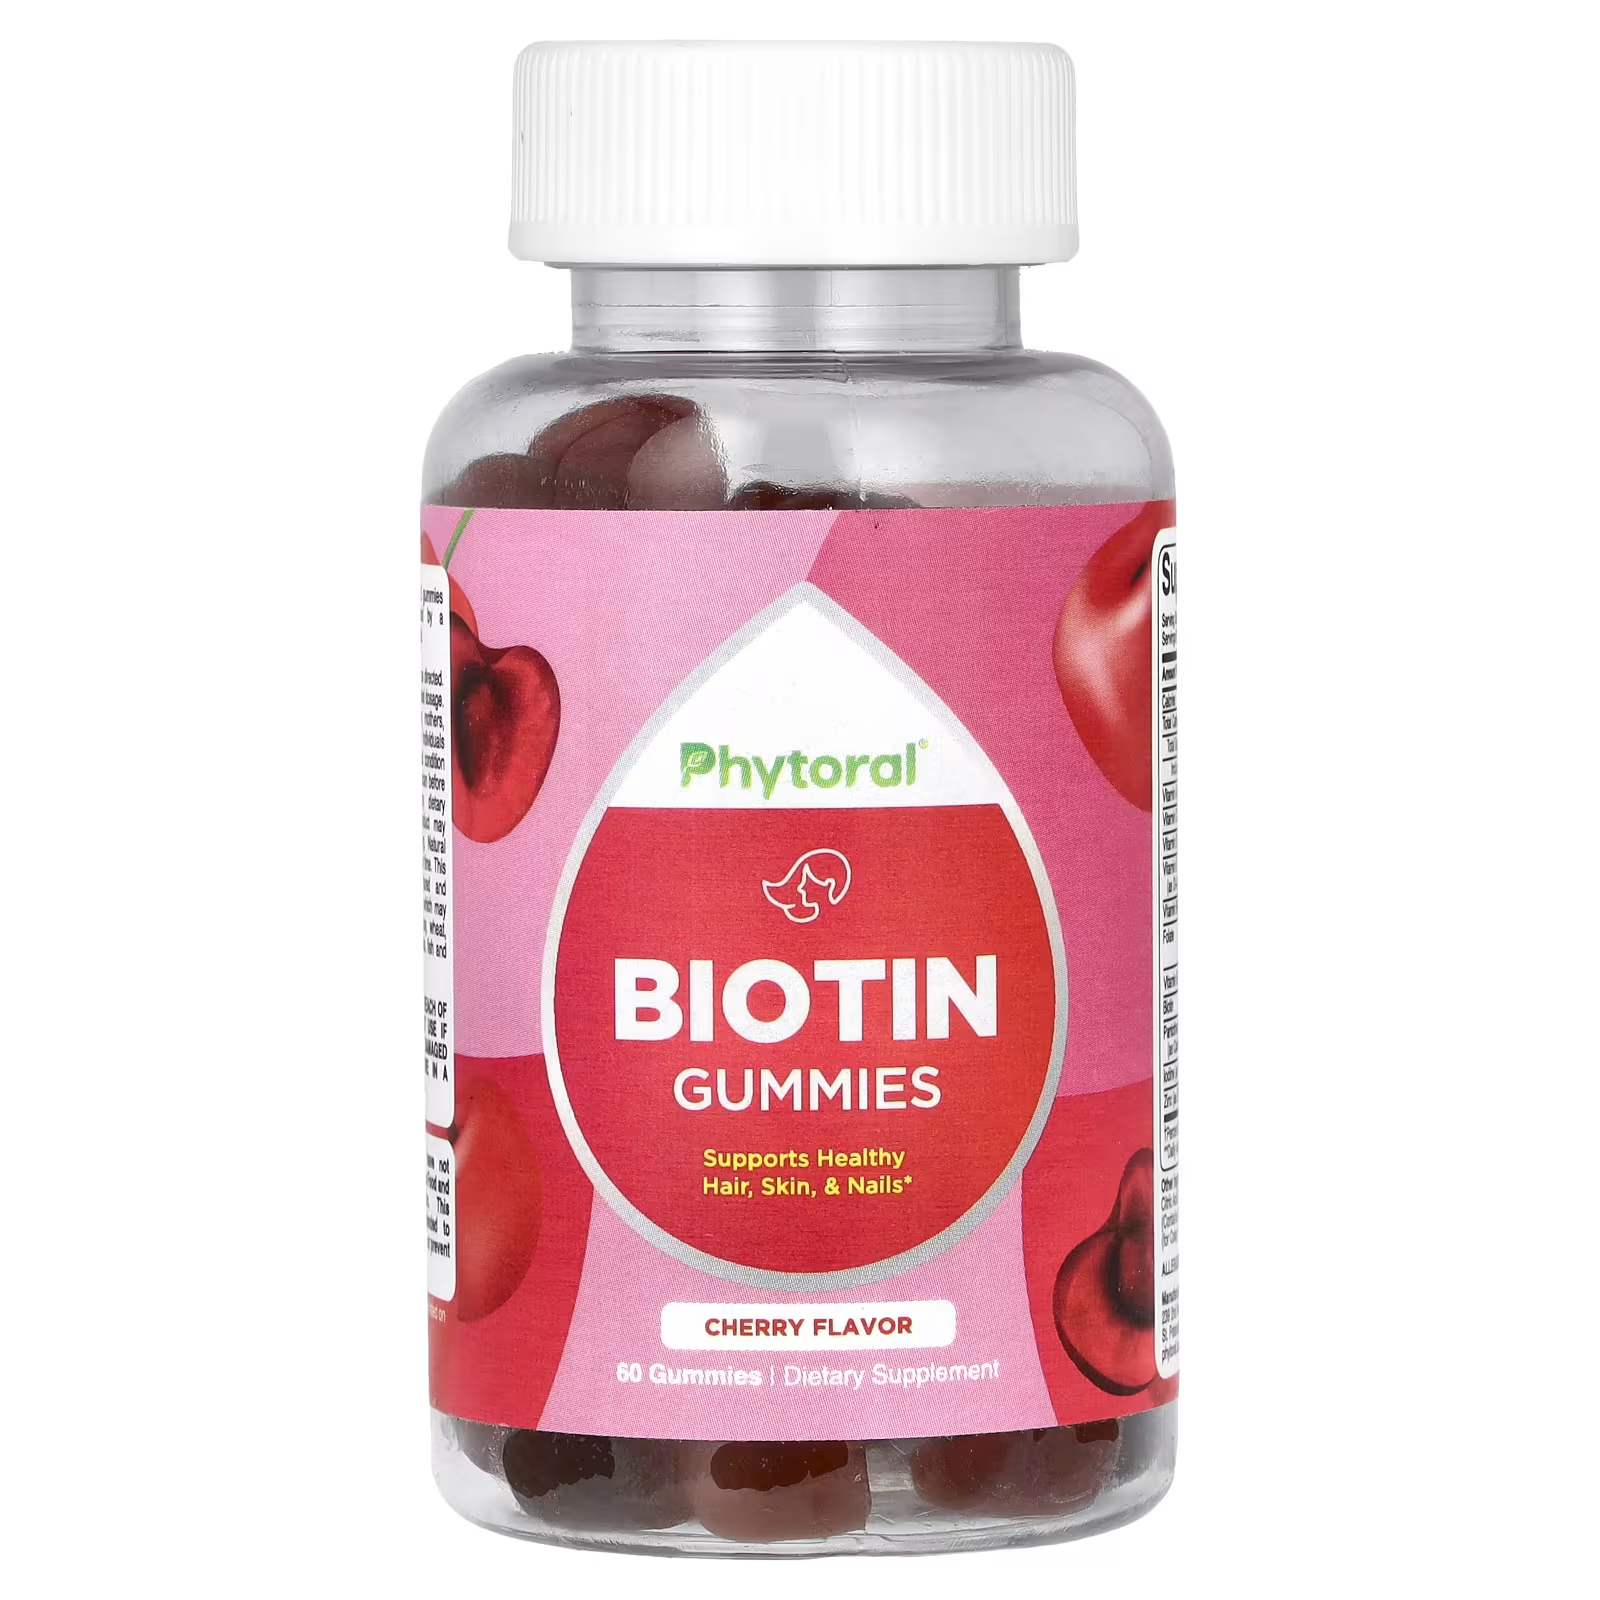 Пищевая добавка Phytoral с биотином, вишня, 60 жевательных конфет пищевая добавка с биотином lifeable натуральная малина 60 жевательных конфет